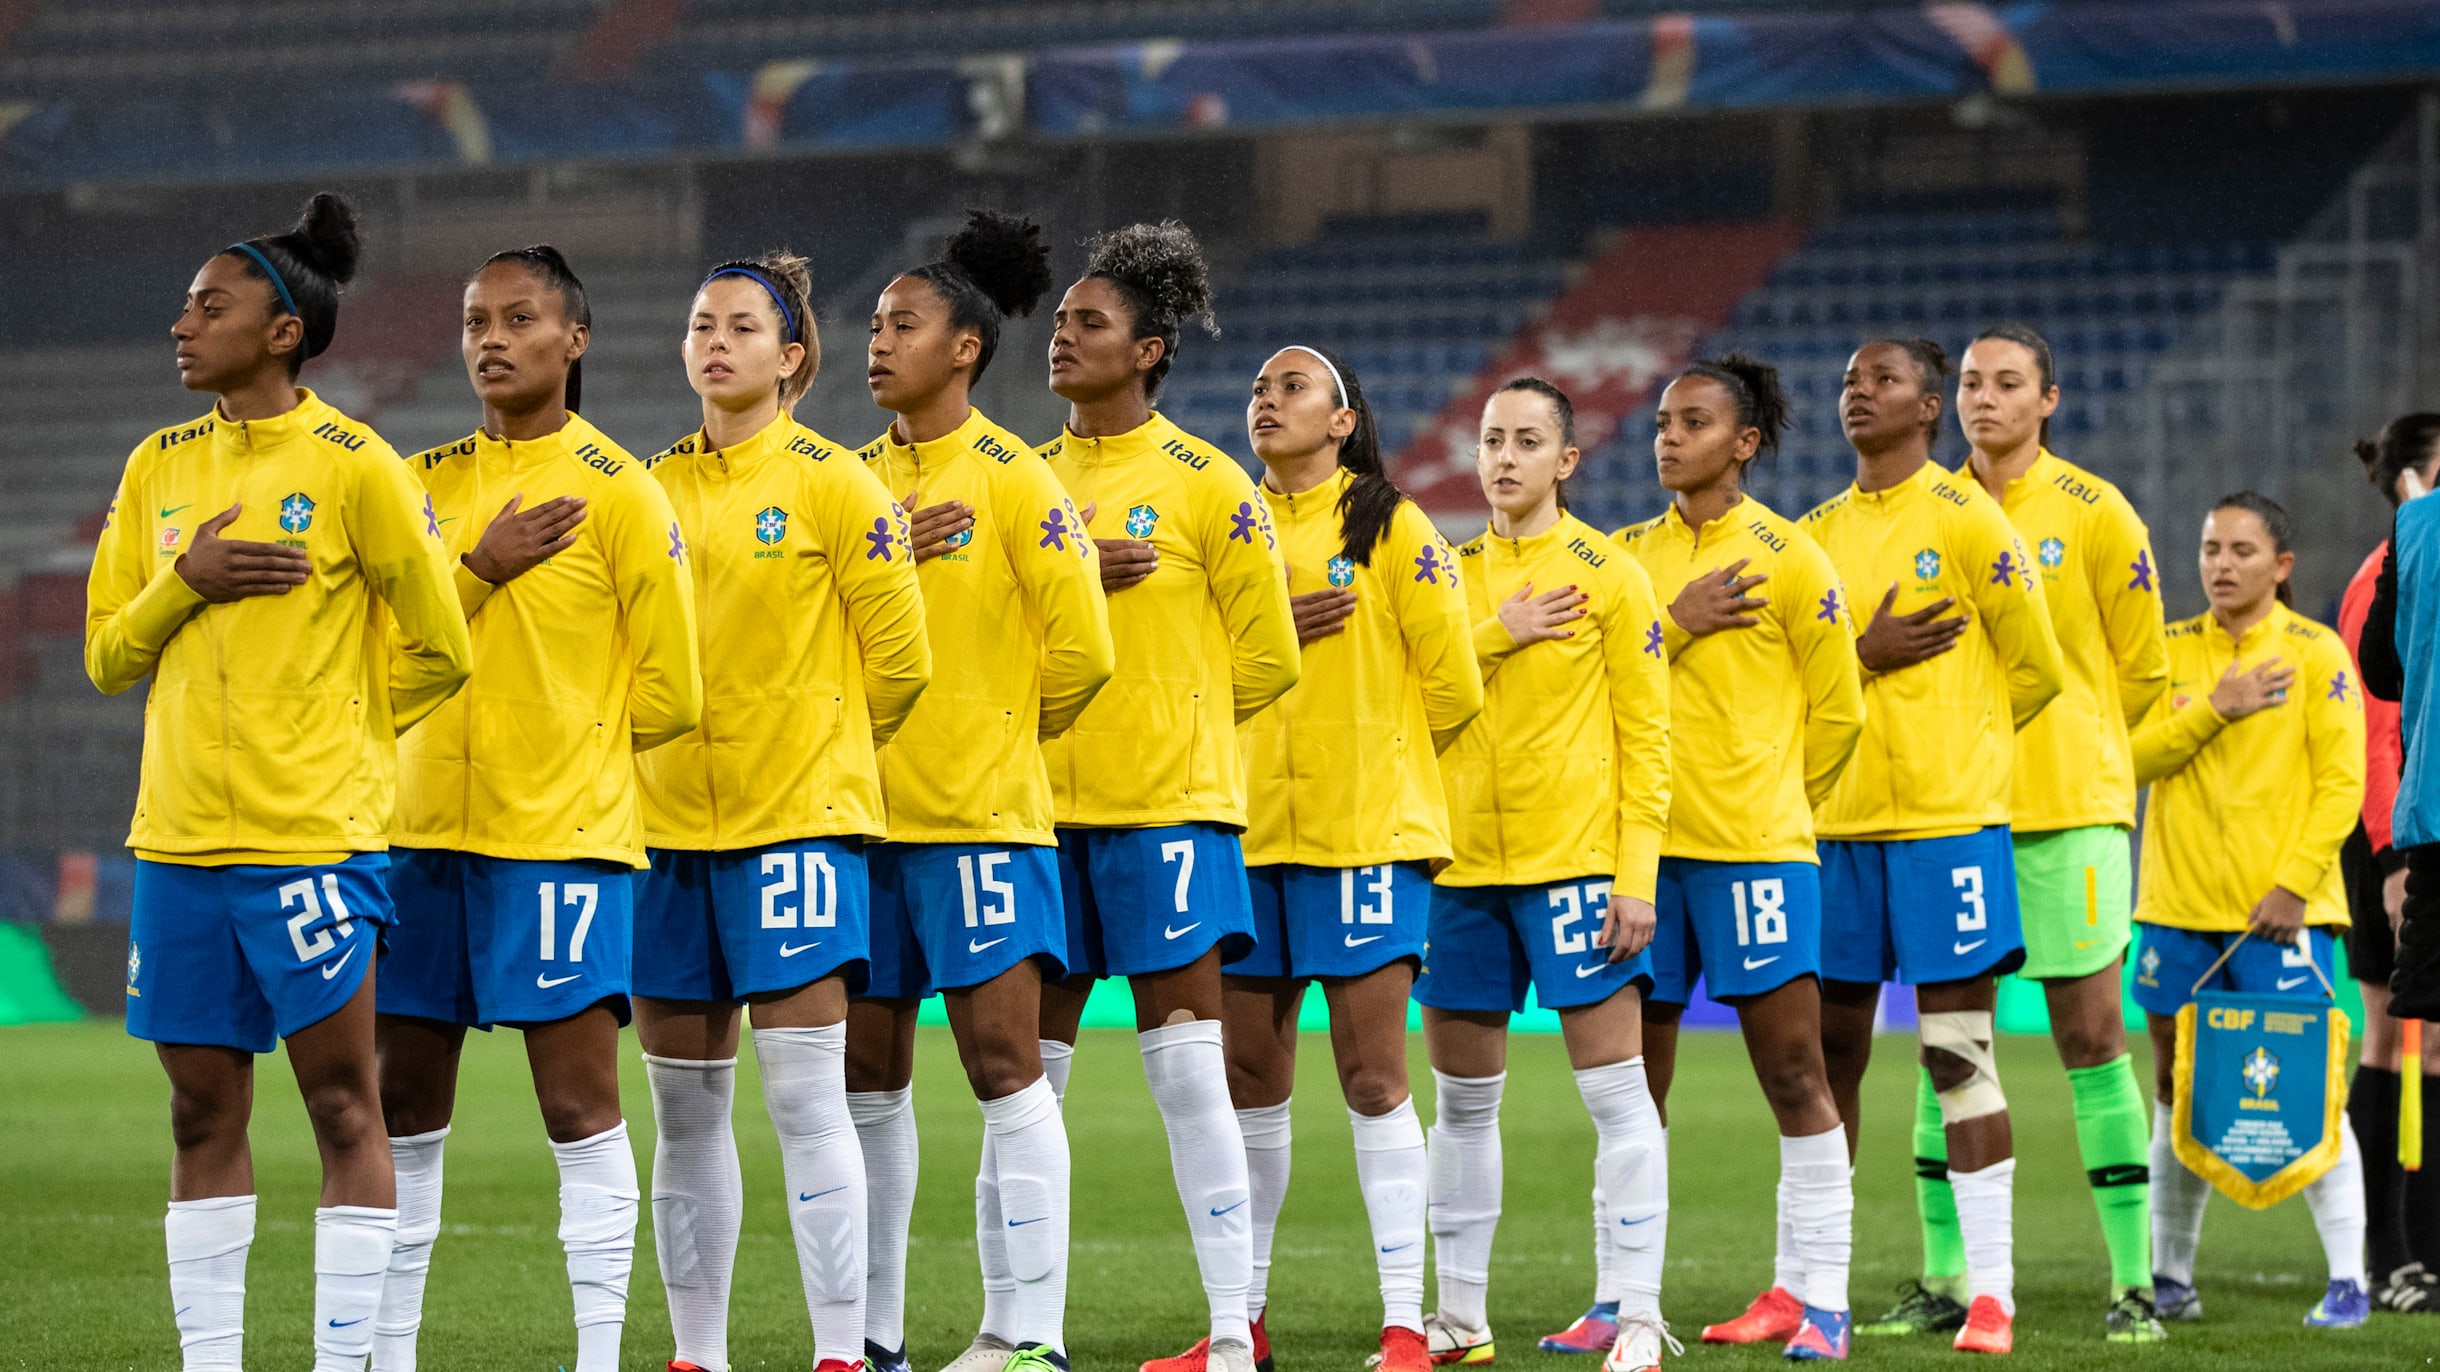 De olho na Copa, seleção feminina fará três amistosos em fevereiro - Placar  - O futebol sem barreiras para você